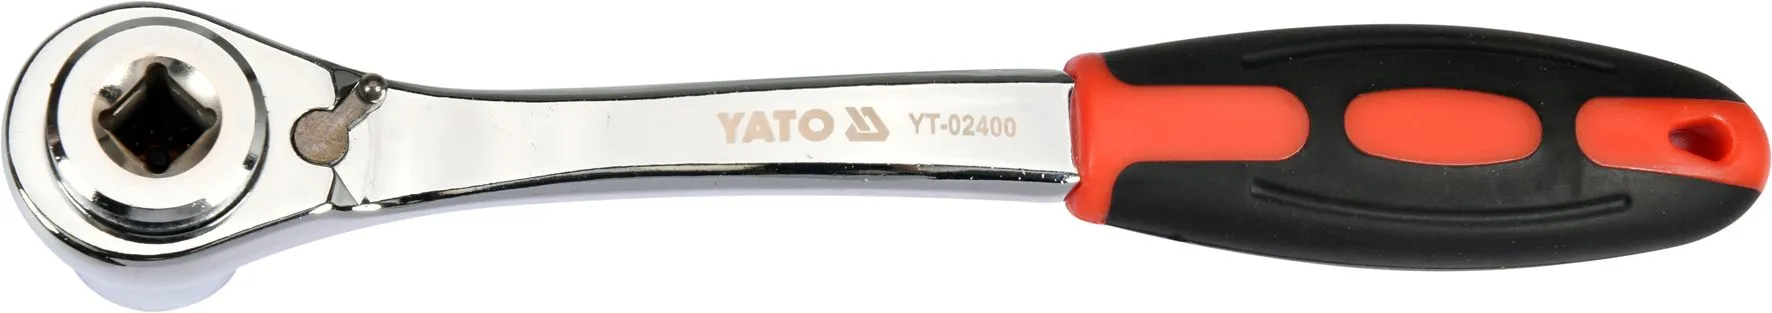 Ключ универсальный торцевой с трещеткой 8-19мм Yato YT-02400